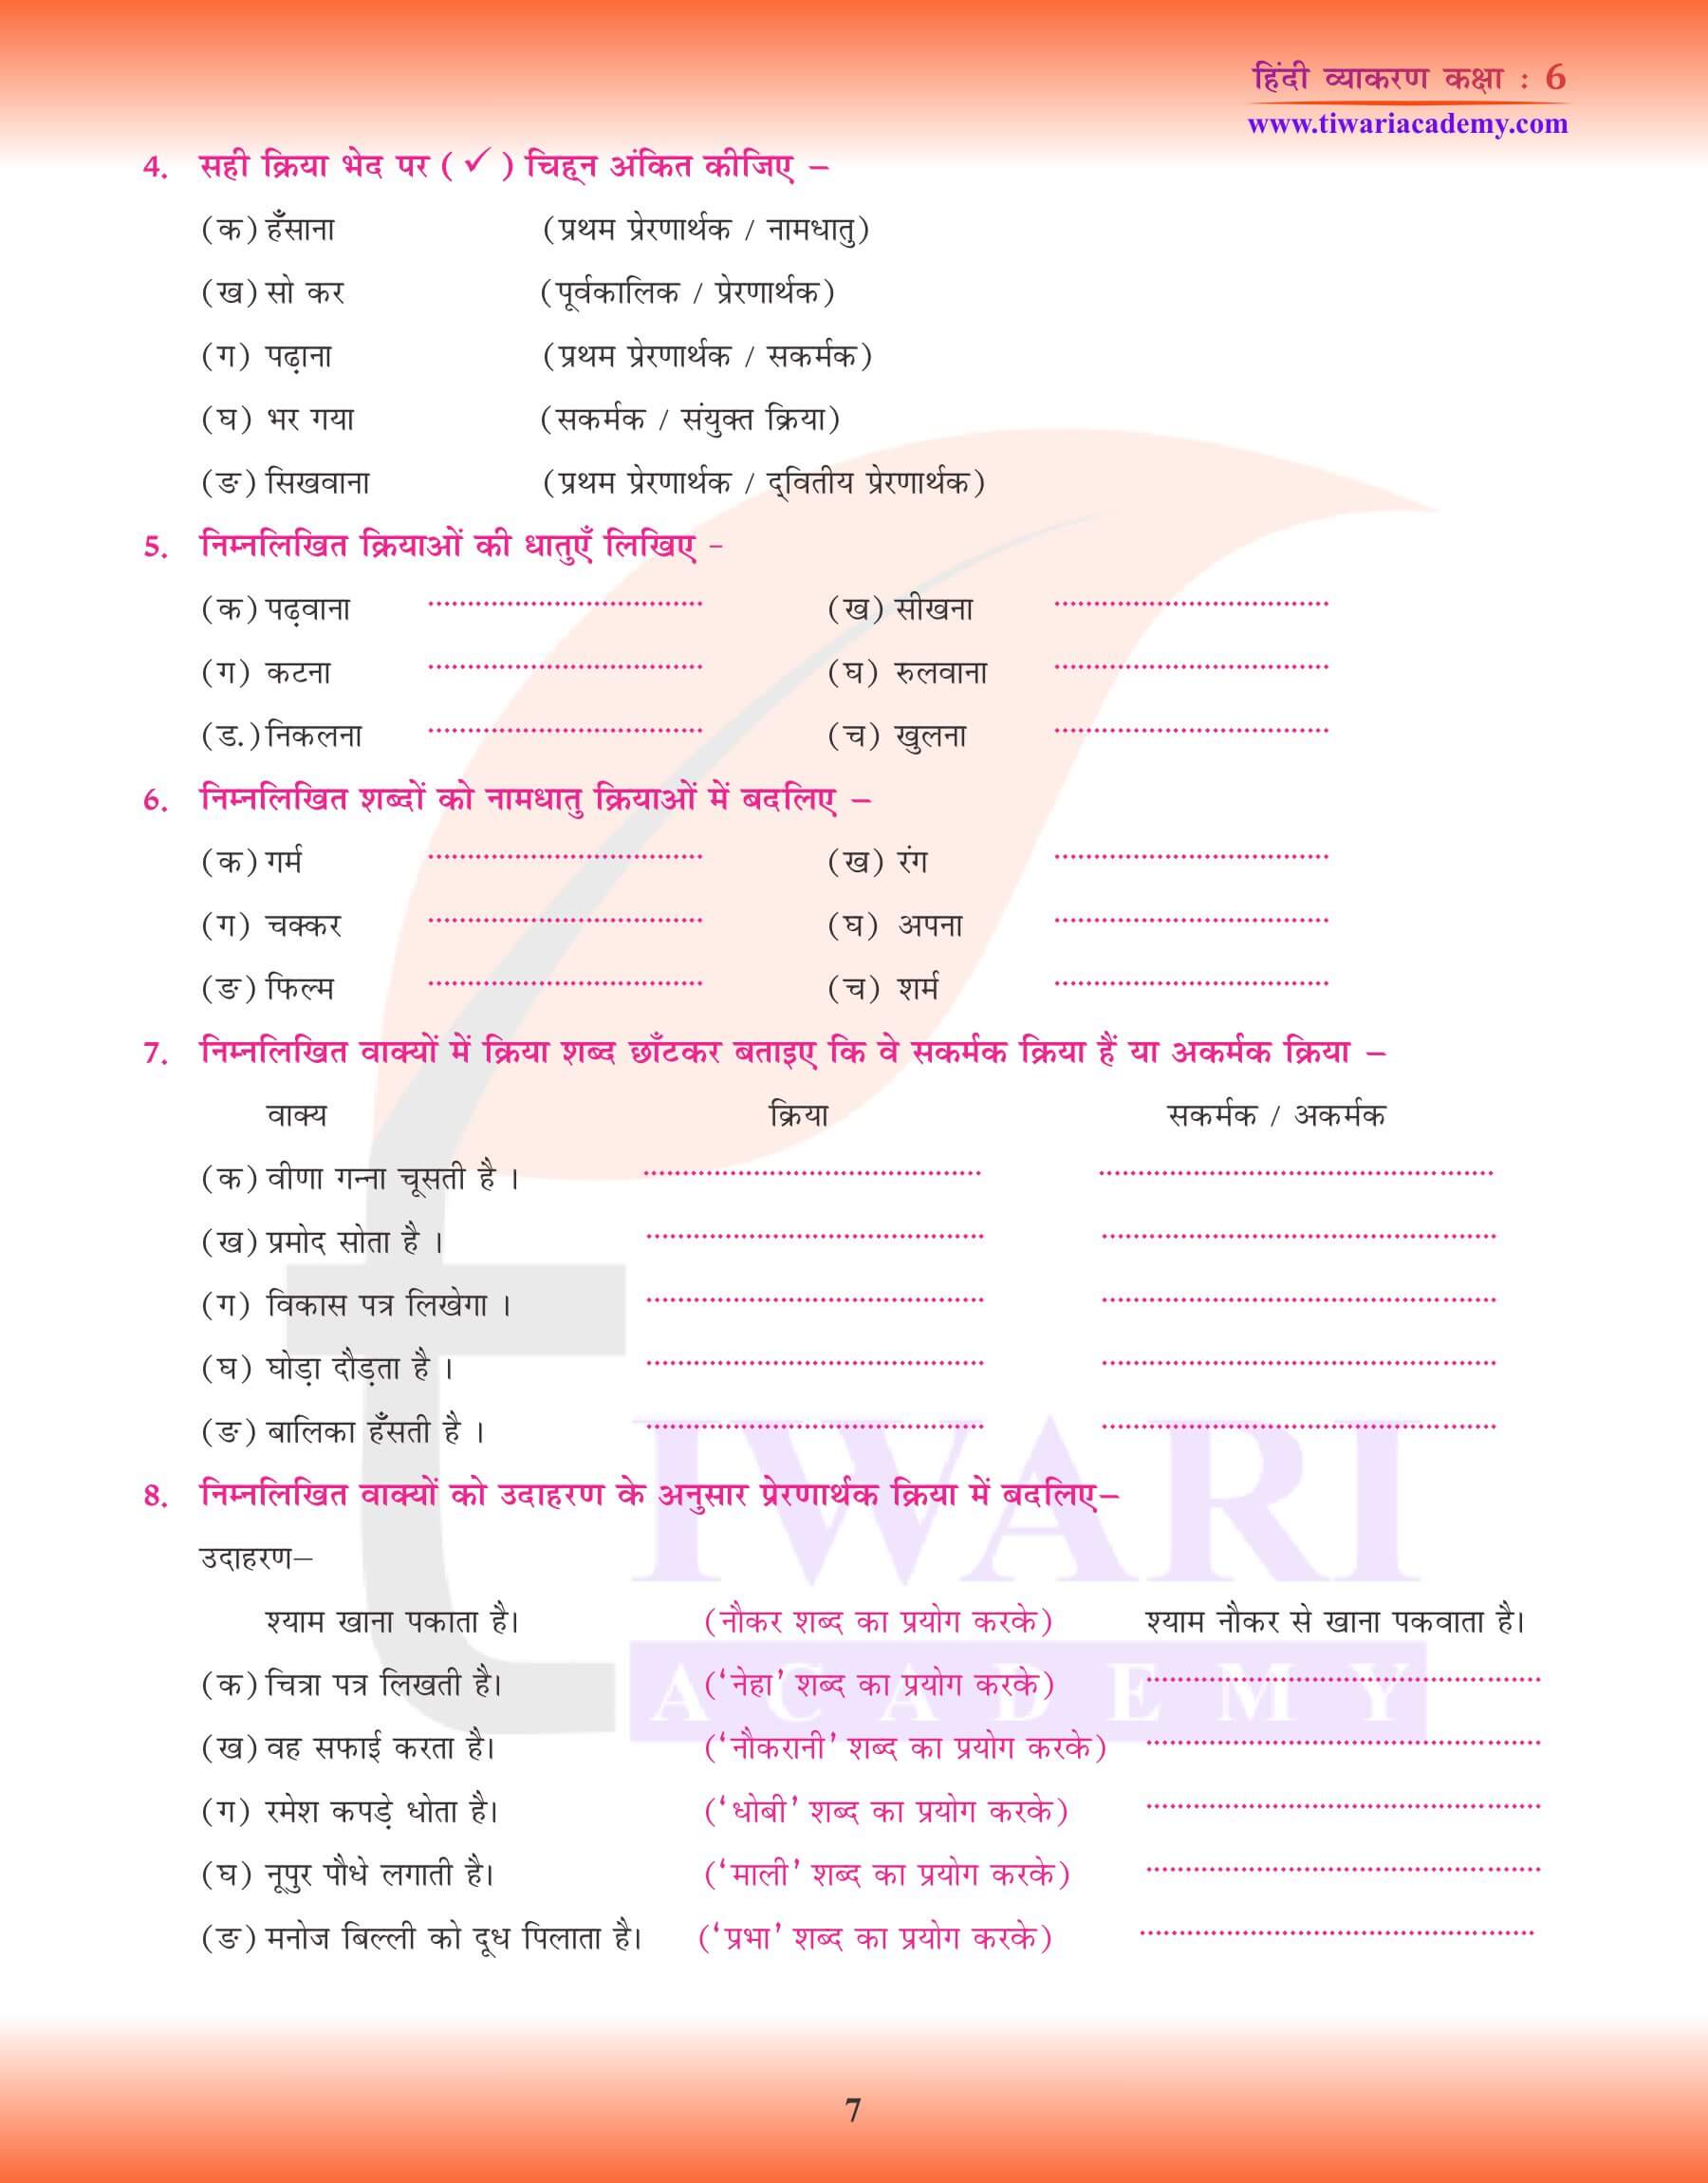 कक्षा 6 हिंदी व्याकरण पाठ 11 क्रिया और उसके तरीके